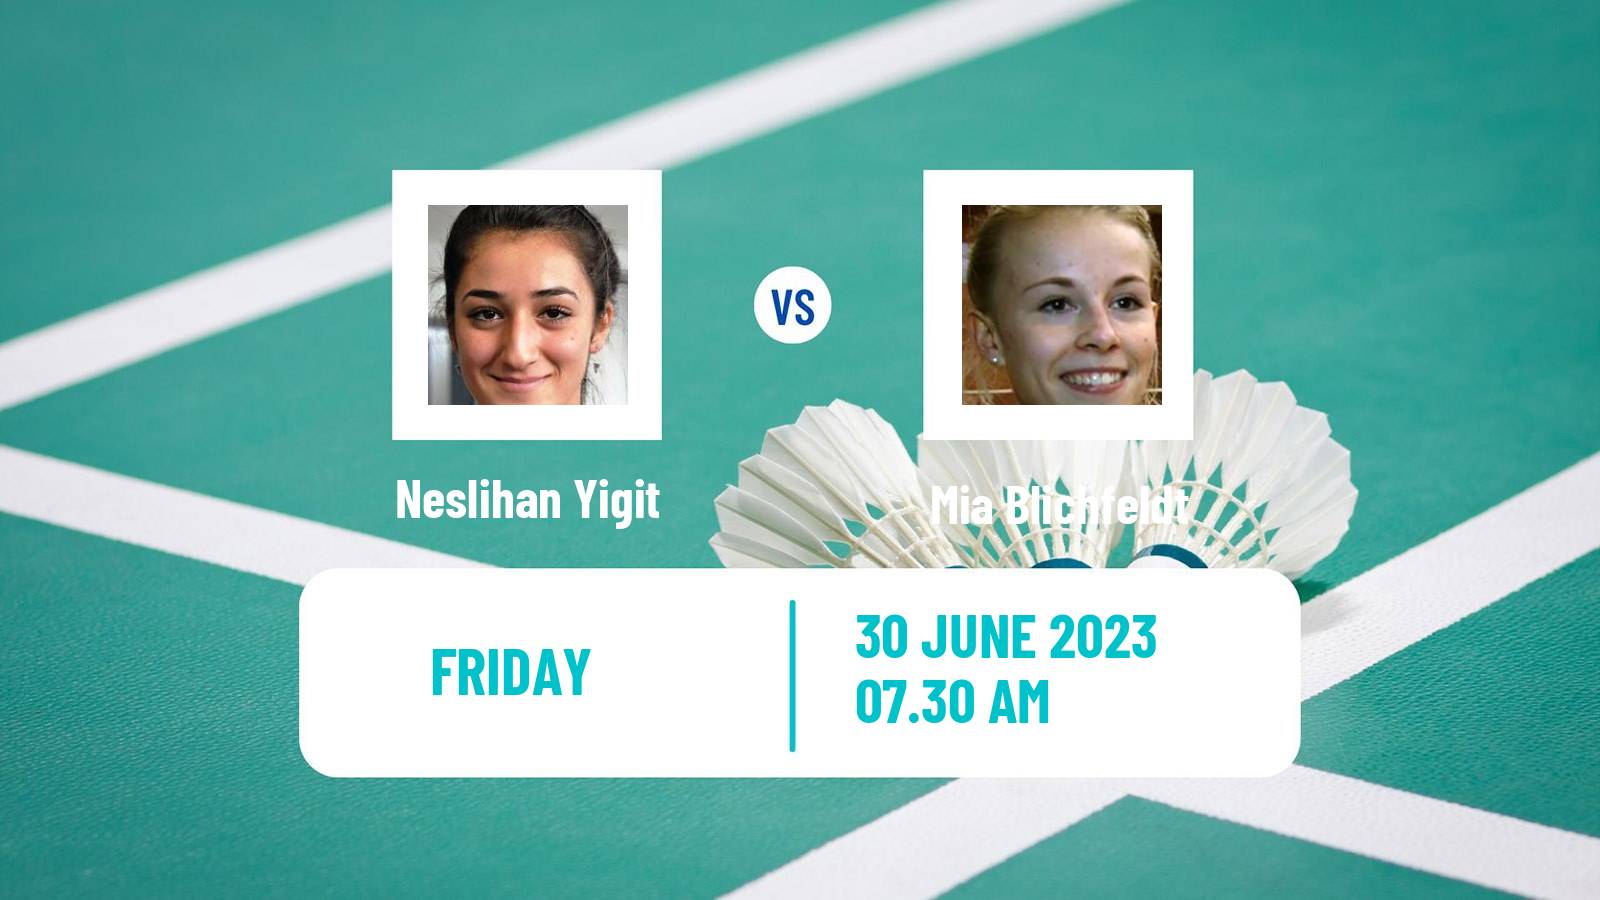 Badminton BWF European Games Women Neslihan Yigit - Mia Blichfeldt